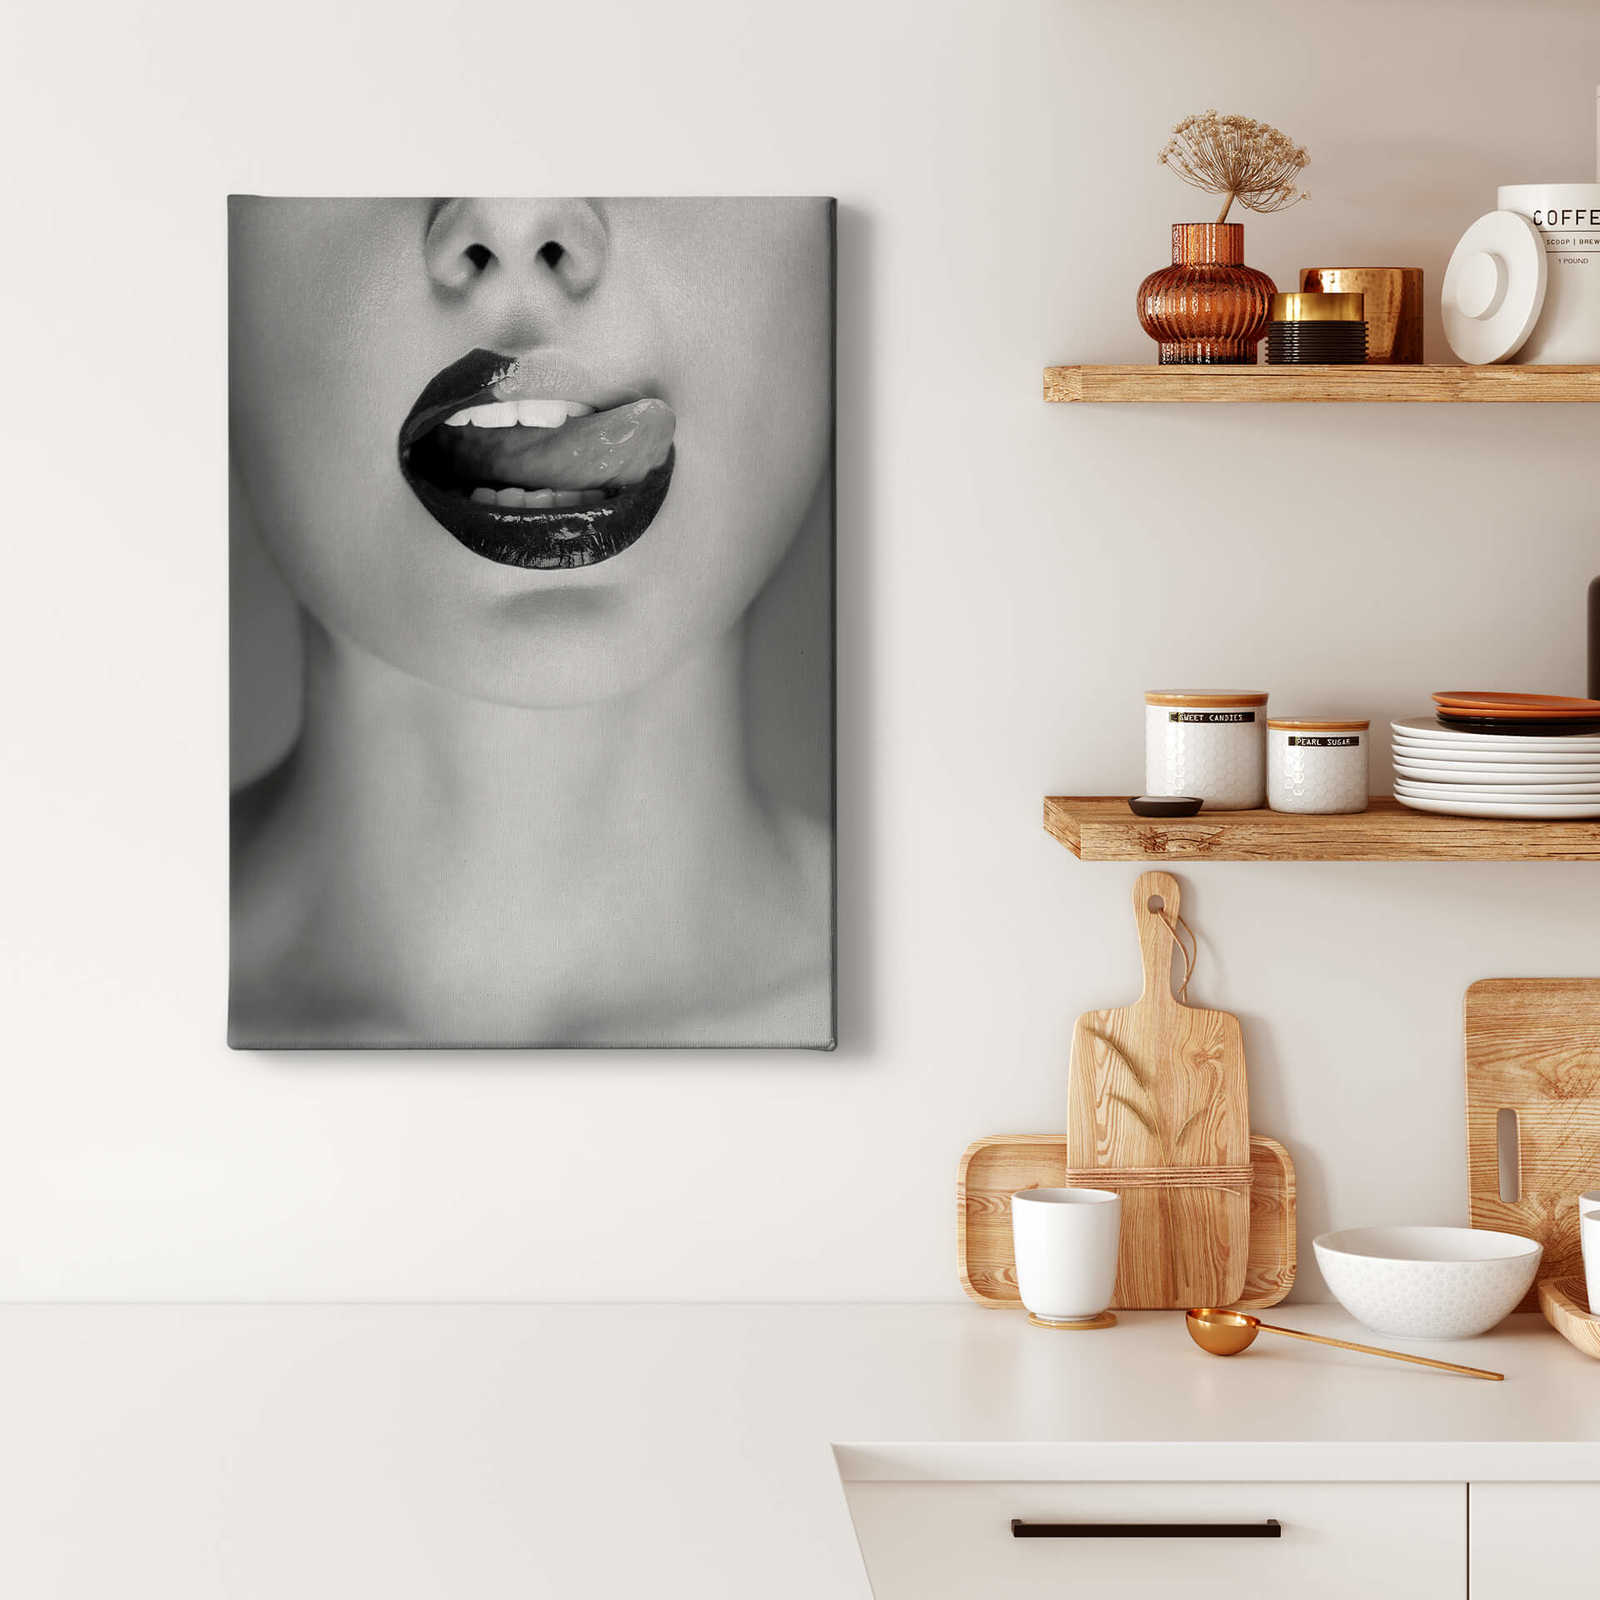             Leinwandbild Porträt Mund mit Schokolade – 0,50 m x 0,70 m
        